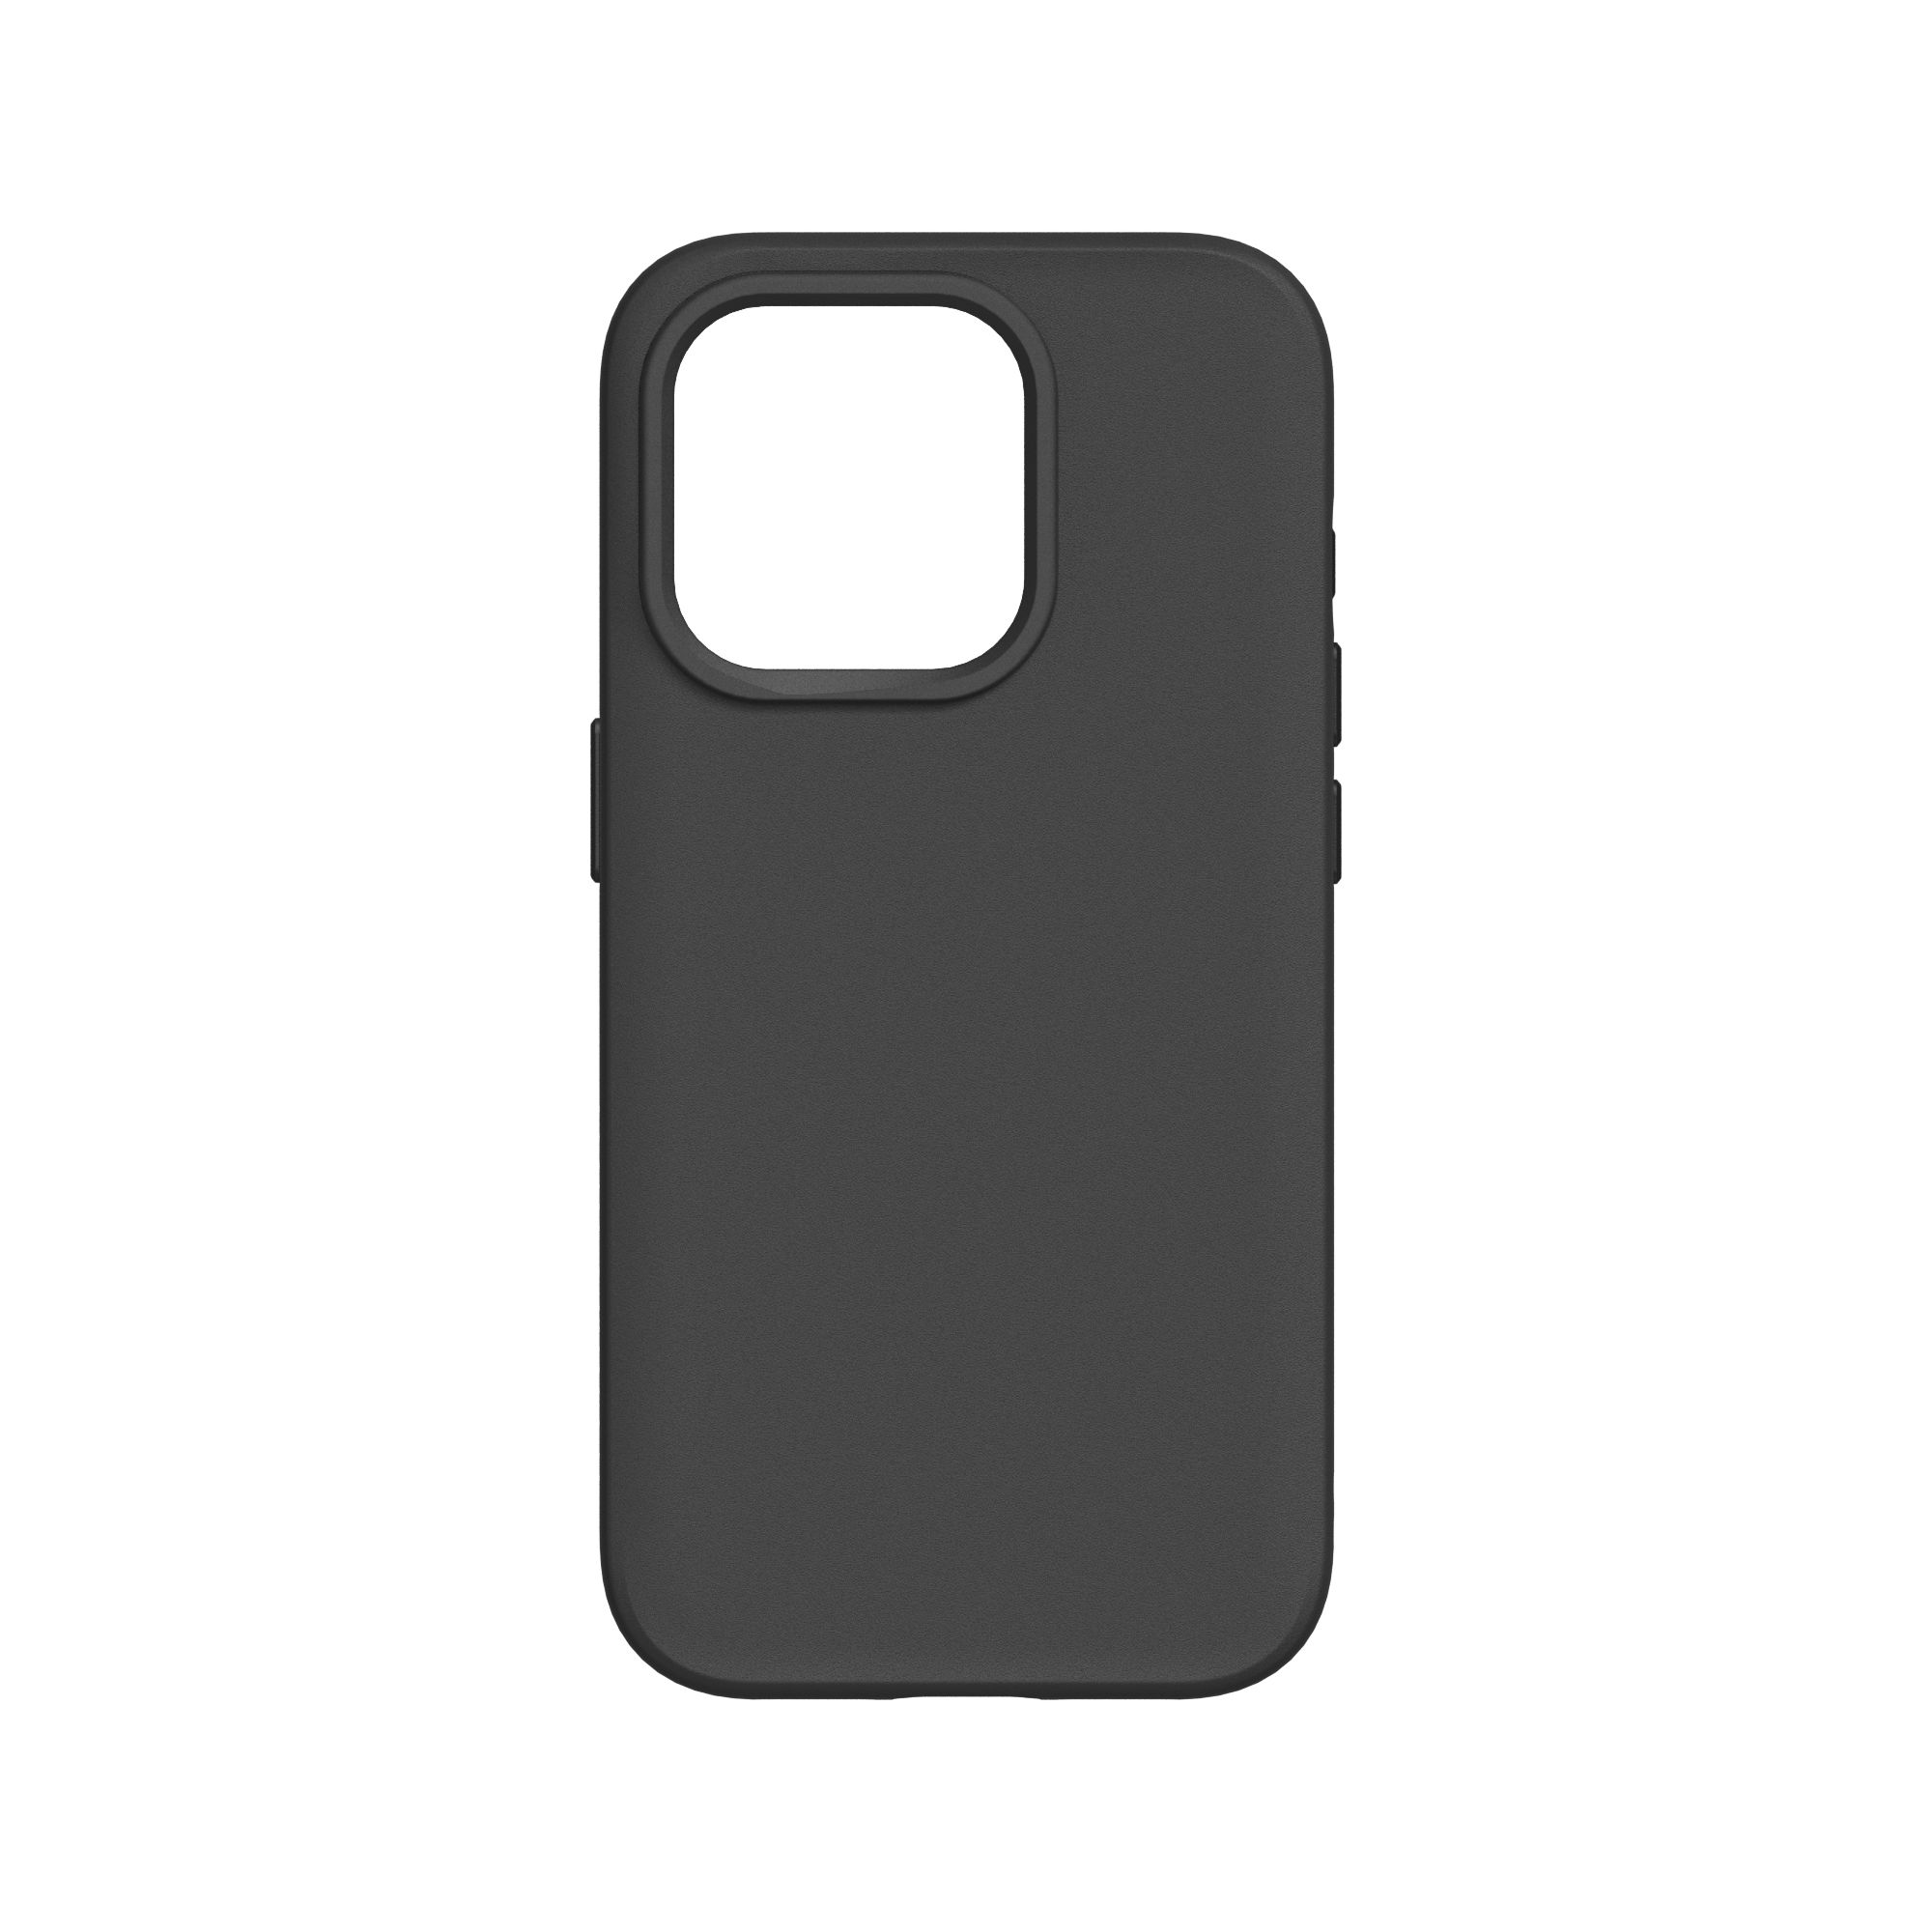 Rhinoshield รุ่น SolidSuit - เคส iPhone 15 Pro - สี Classic Black